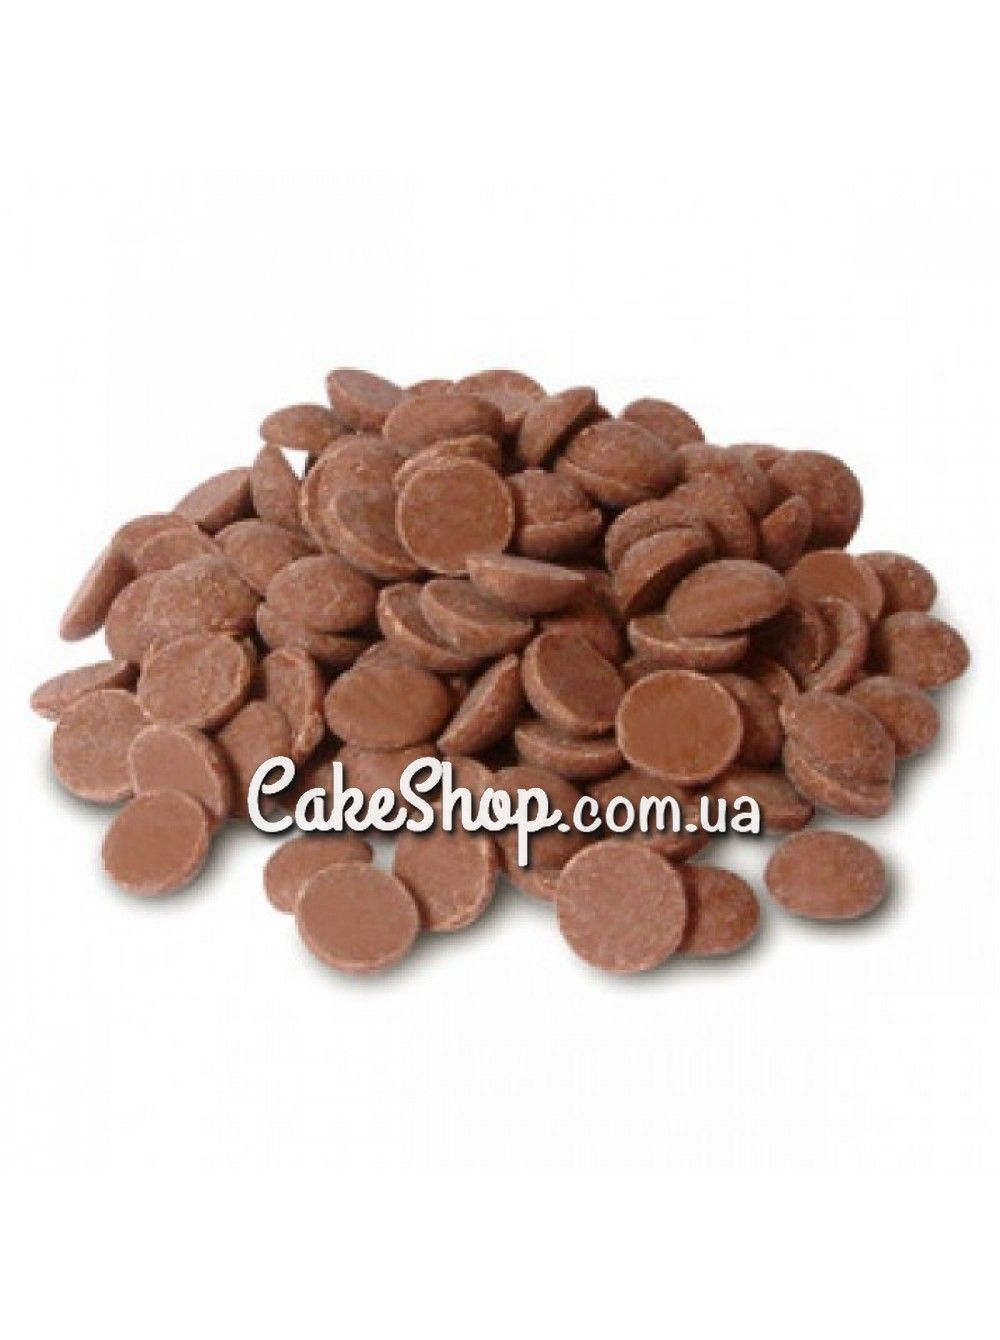 ⋗ Шоколад бельгийский Callebaut 823 молочный 33,6% в дисках, 1 кг купить в Украине ➛ CakeShop.com.ua, фото